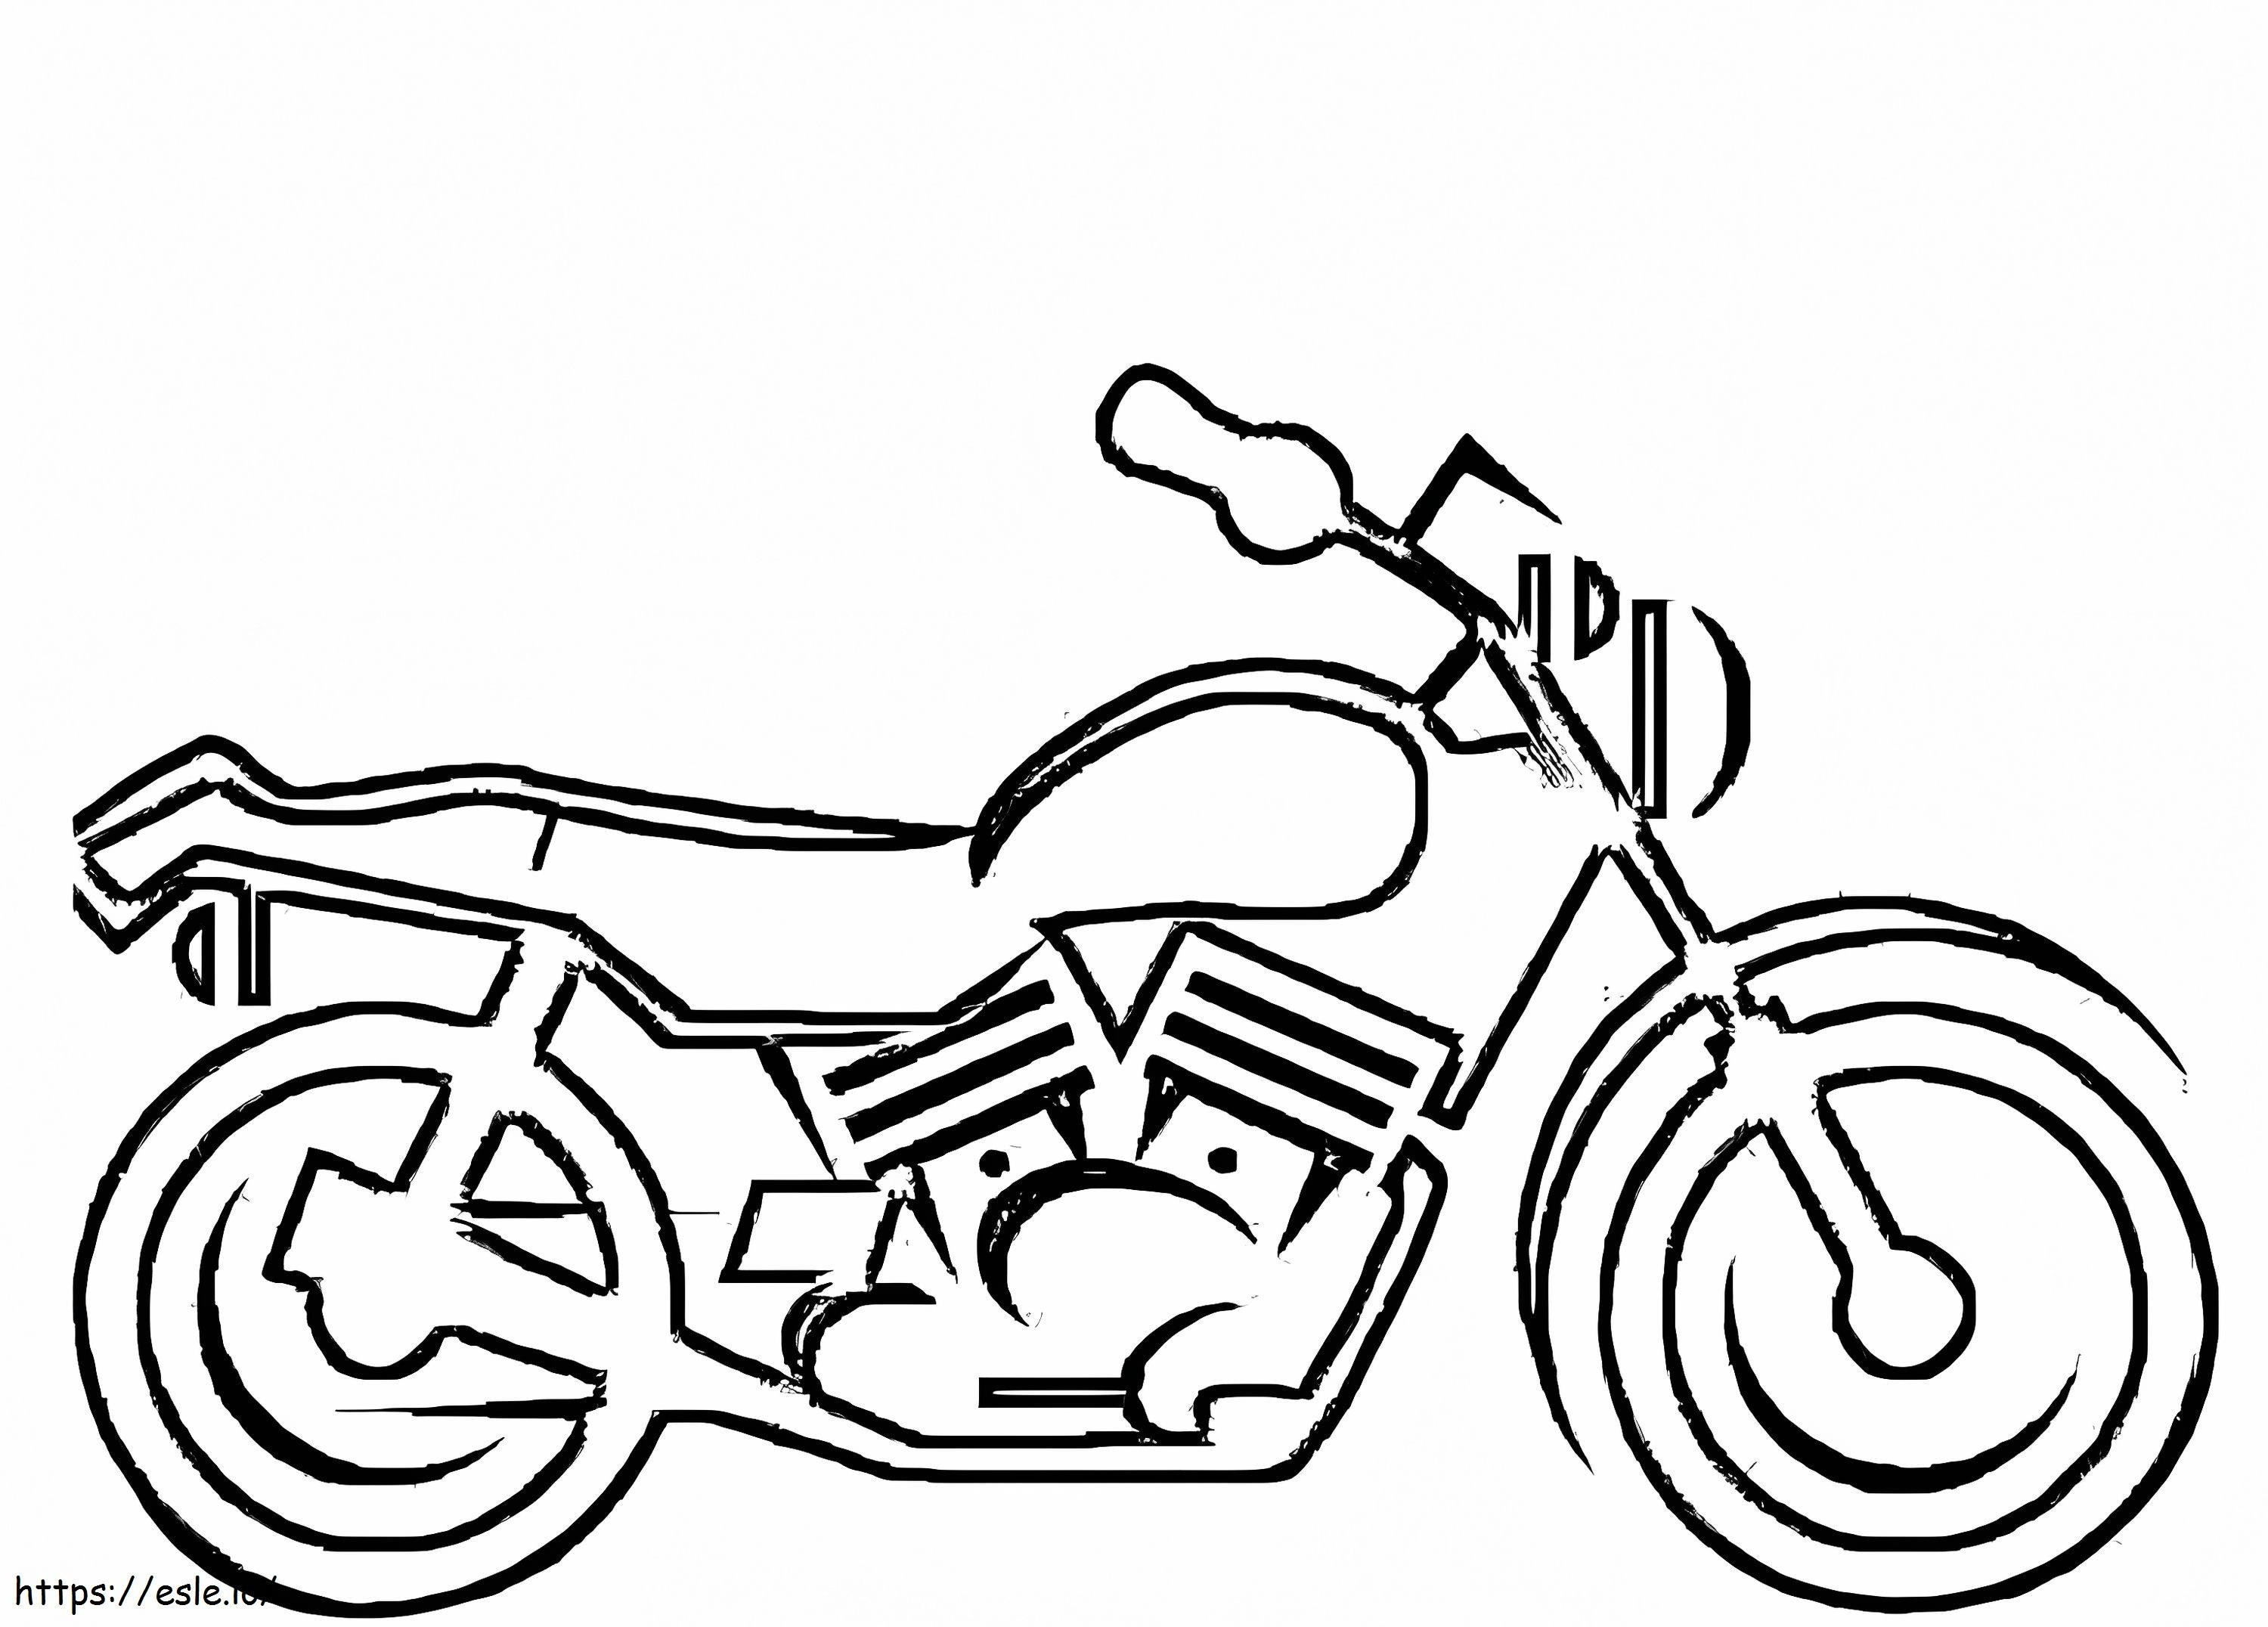 Coloriage Une moto à imprimer dessin